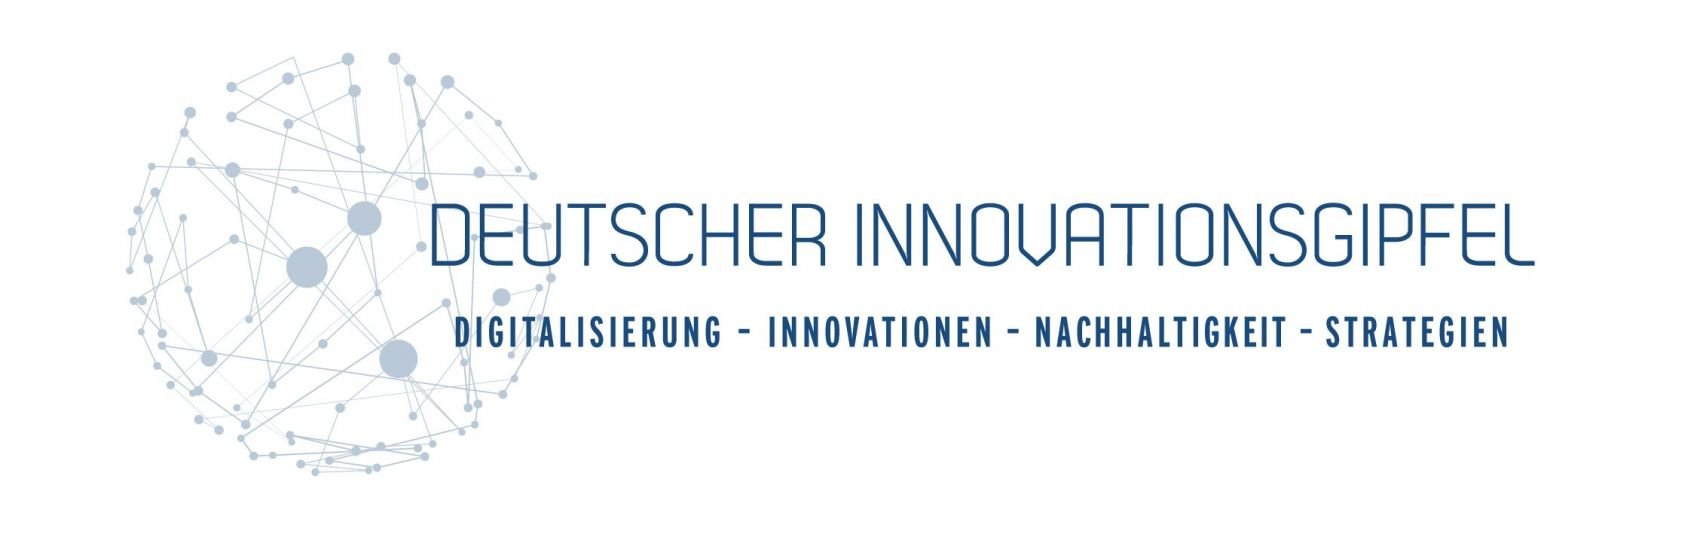 Innovationsgipfel 2018 München